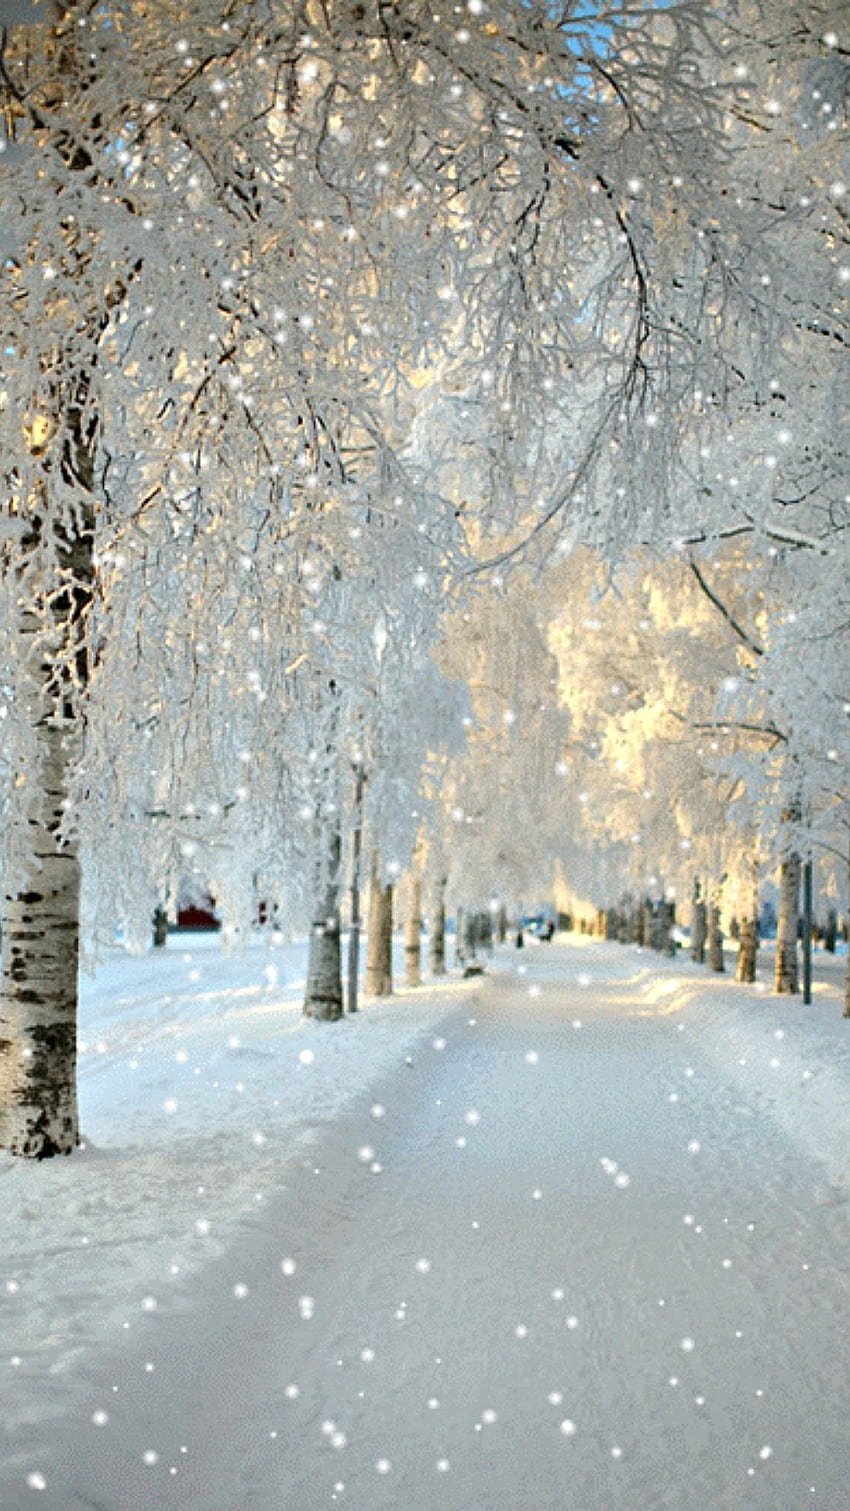 Điểm ảnh đẹp mùa đông: Hãy tận hưởng không khí se lạnh của mùa đông bằng những bức ảnh đẹp mắt về mùa đông. Những tuyết rơi, những con đường trắng xóa, và những cánh đồng phủ đầy tuyết sẽ khiến bạn cảm thấy như đang trải qua một hành trình thực sự đến với thế giới của mùa đông.